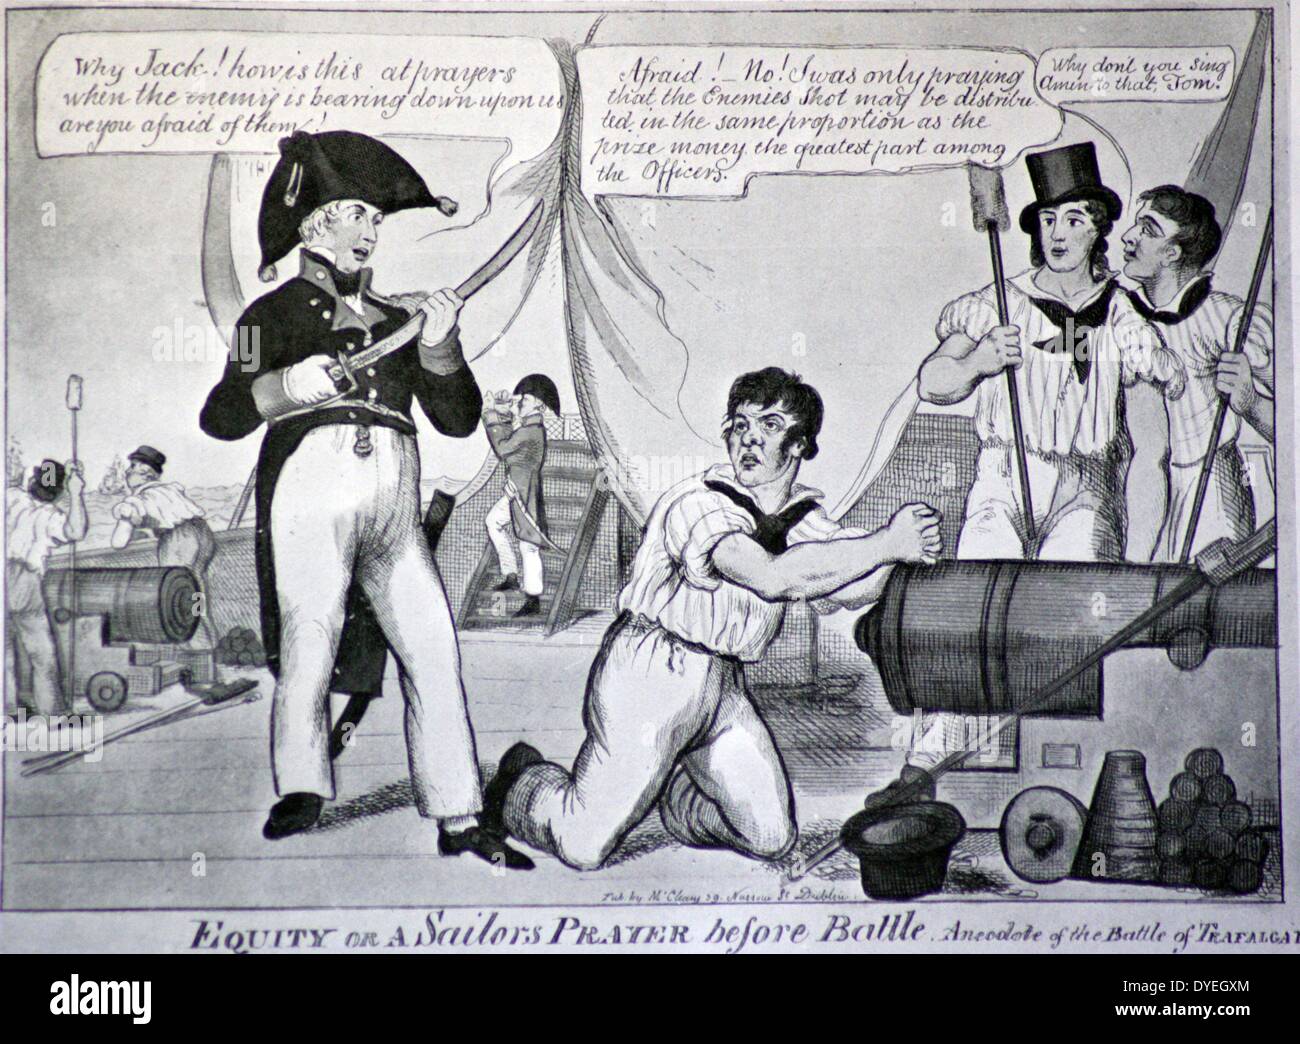 Eine zeitgenössische Karikatur - Die Schlacht von Trafalgar, 21. Oktober, 1805 war ein naval Engagement von der britischen Royal Navy gegen die kombinierten Flotten der französischen Marine und Spanische Marine gekämpft, während des Krieges von der Dritten Koalition der Napoleonischen Kriege. Stockfoto